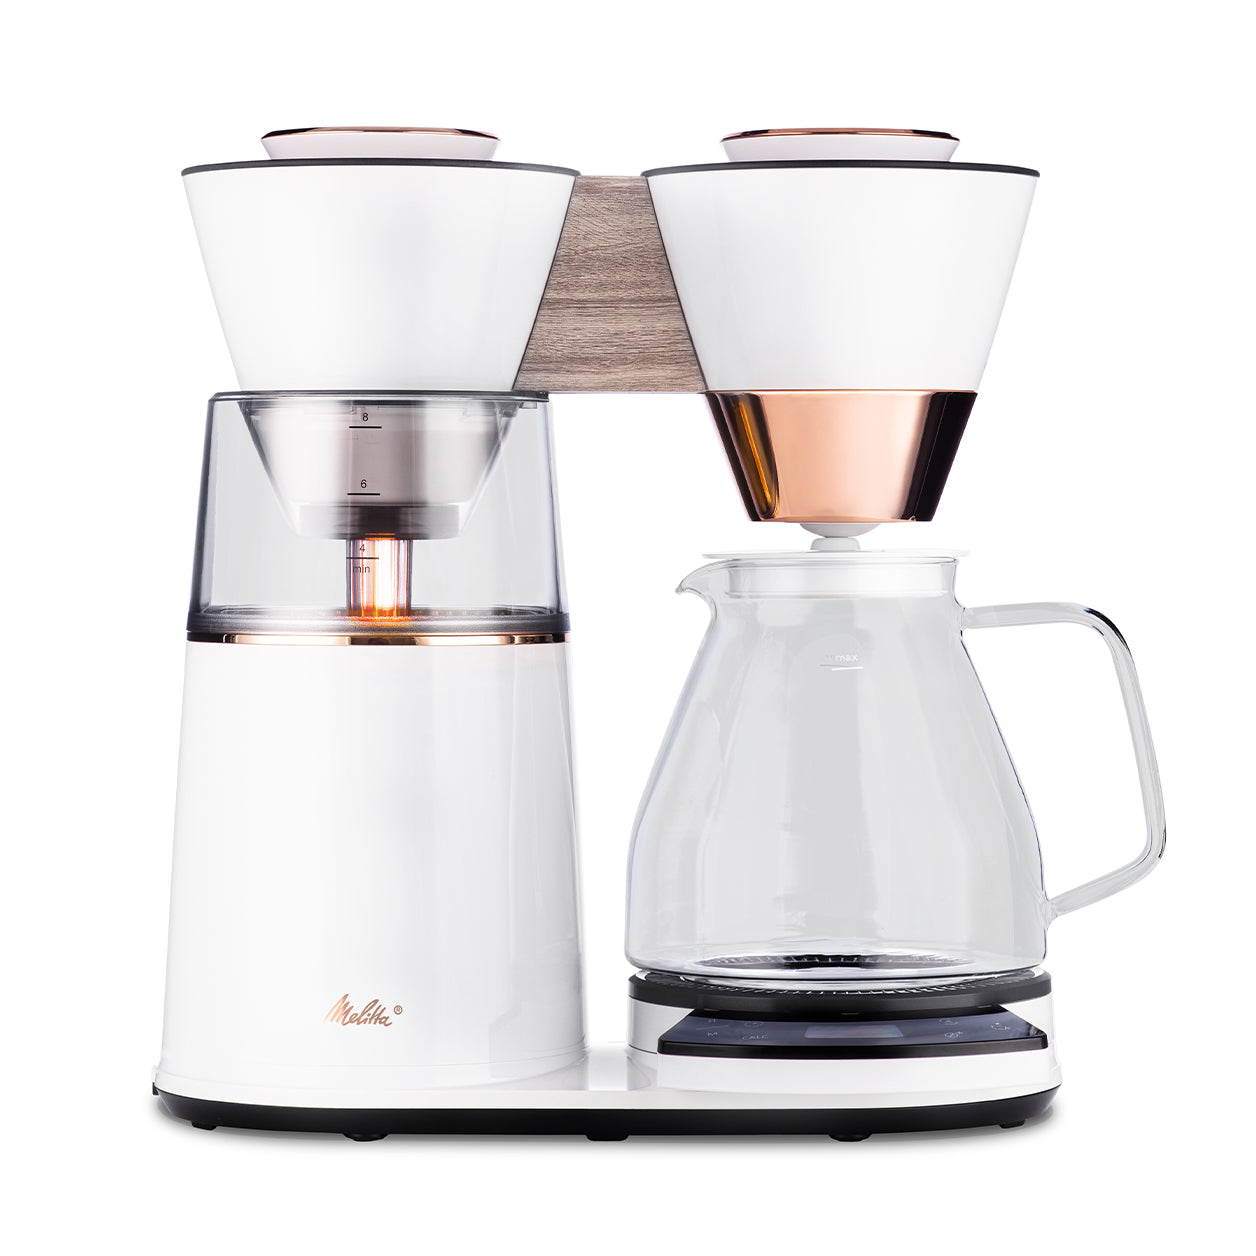 Melitta Vision Automatic Drip Coffee Maker Copper White